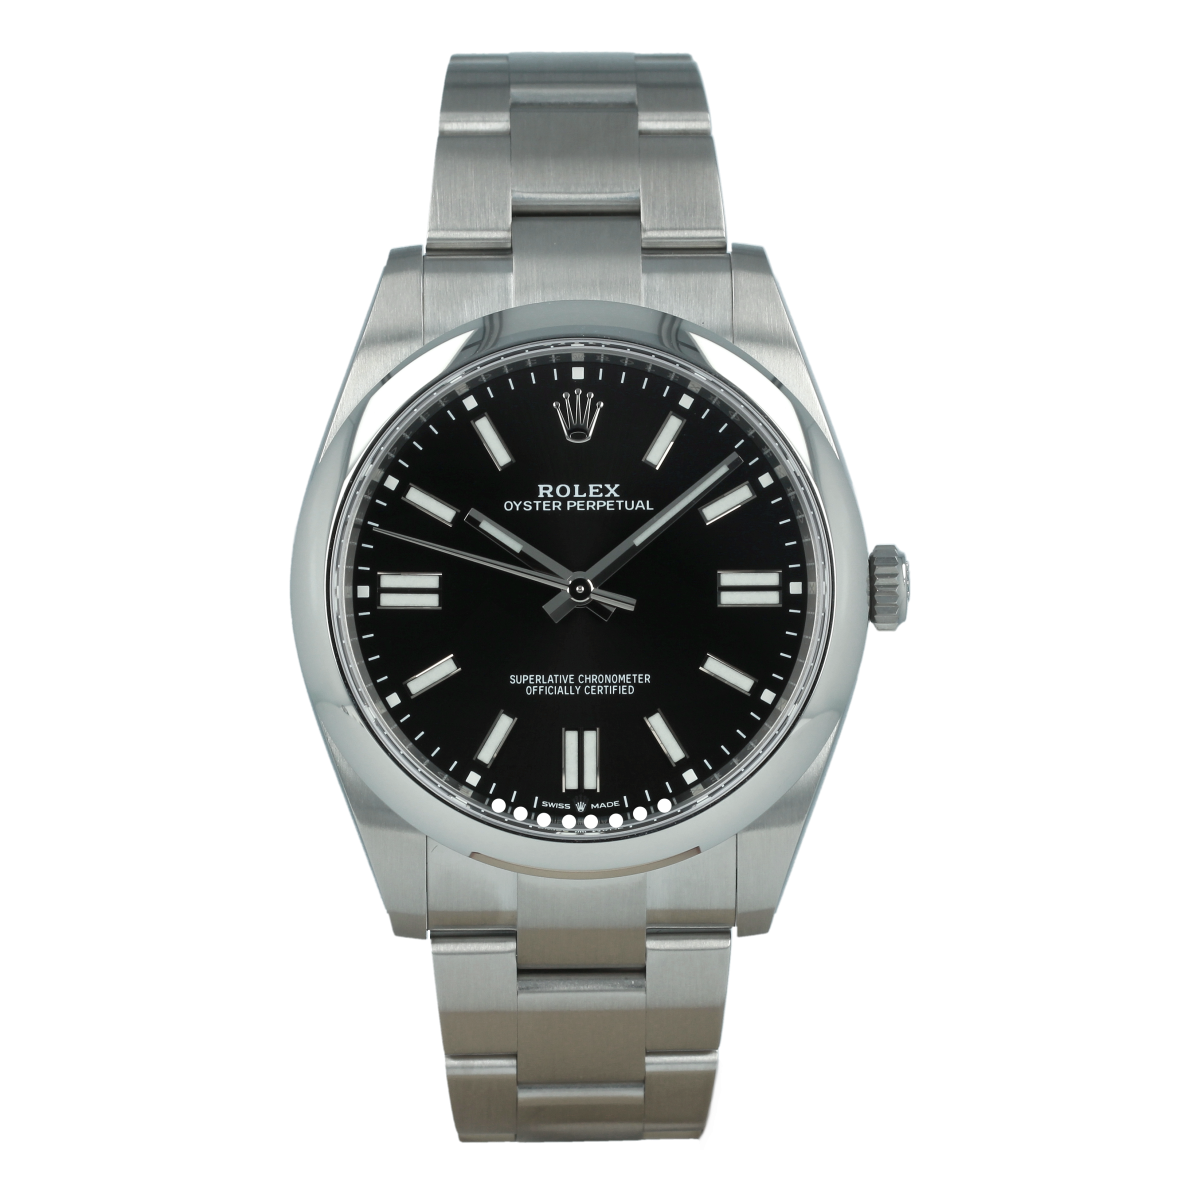 Rolex Oyster Perpetual 124300 41mm Esfera Negro Vivo *Nuevo a Estrenar* | Comprar reloj Rolex de segunda mano